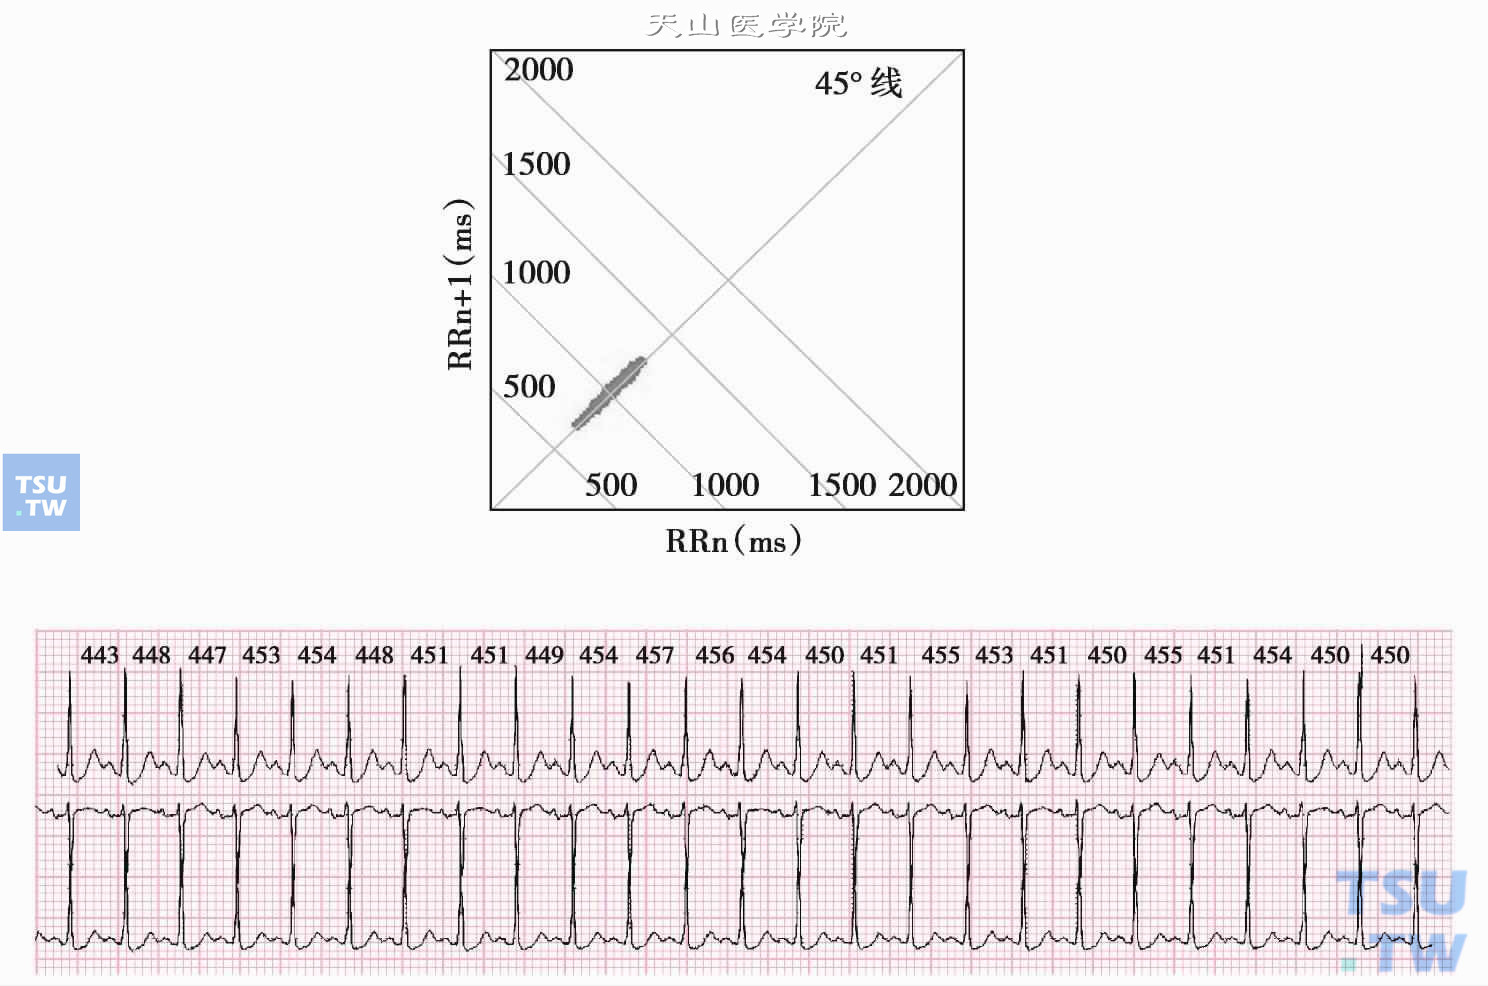  窦性心动过速：图为1小时的心电散点图，图形沿45°线分布，横、纵坐标轴的位置在400～700ms之间，相对应的400～600ms之间为心动过速的散点，而在600～700ms之间的散点为正常心率。下图为相应片段心电图，24个RR间期，平均451ms，变化范围443～457ms。相邻两RR间期差值最小为0ms，最大为5ms。可见窦性心律过快时，节律相对较规整